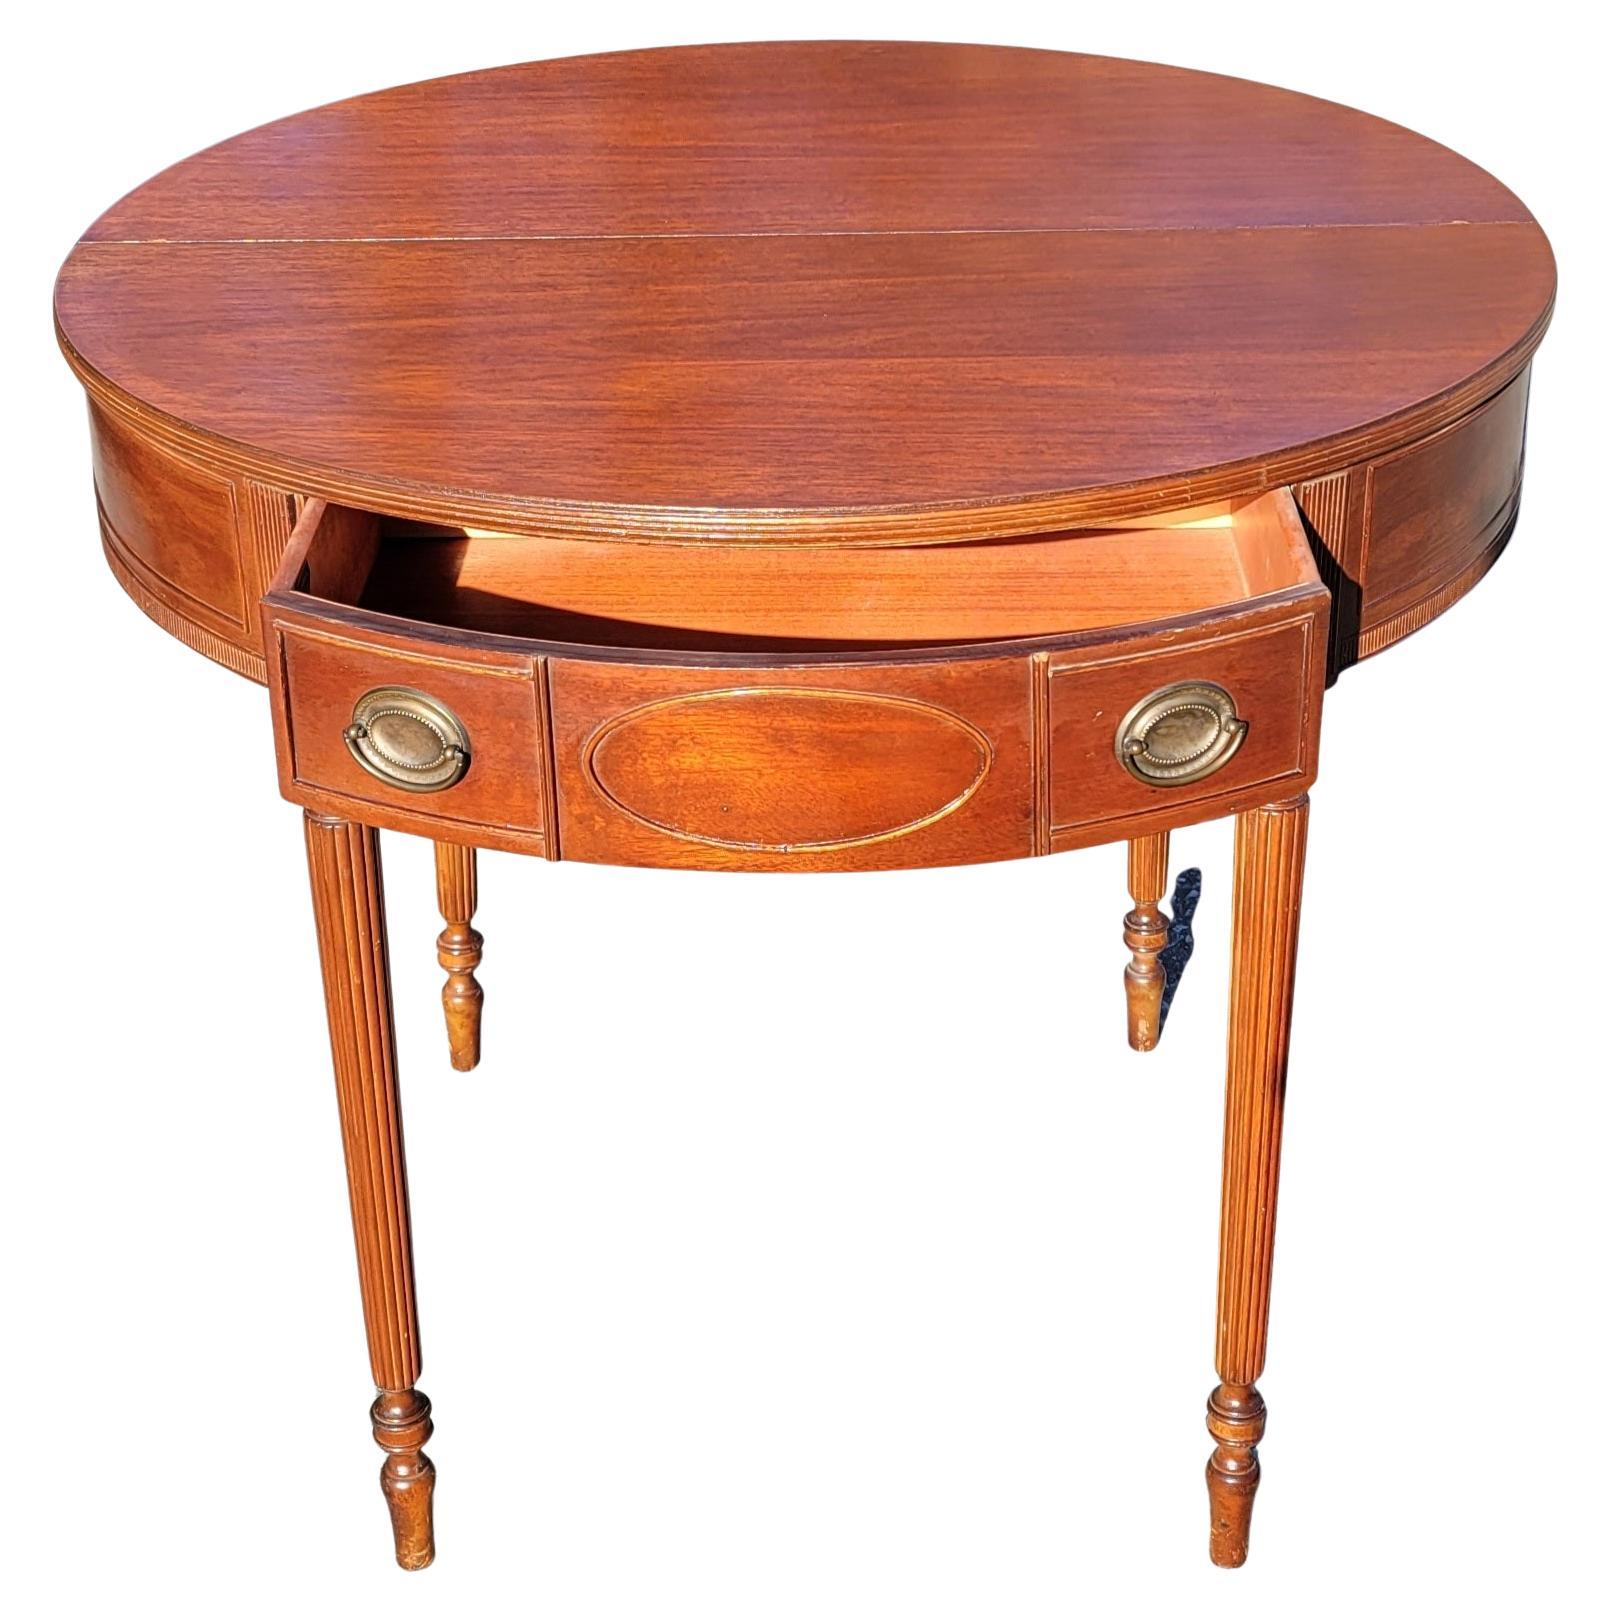 Eine exquisite 19. Jahrhundert American Federal Hepplewhite Mahagoni Demi-Lune Flip-Top Konsole Tisch oder Kartentisch in sehr gutem antiken Zustand. Der Tisch wurde vor kurzem komplett neu lackiert. Er verfügt über eine große Schublade mit viel